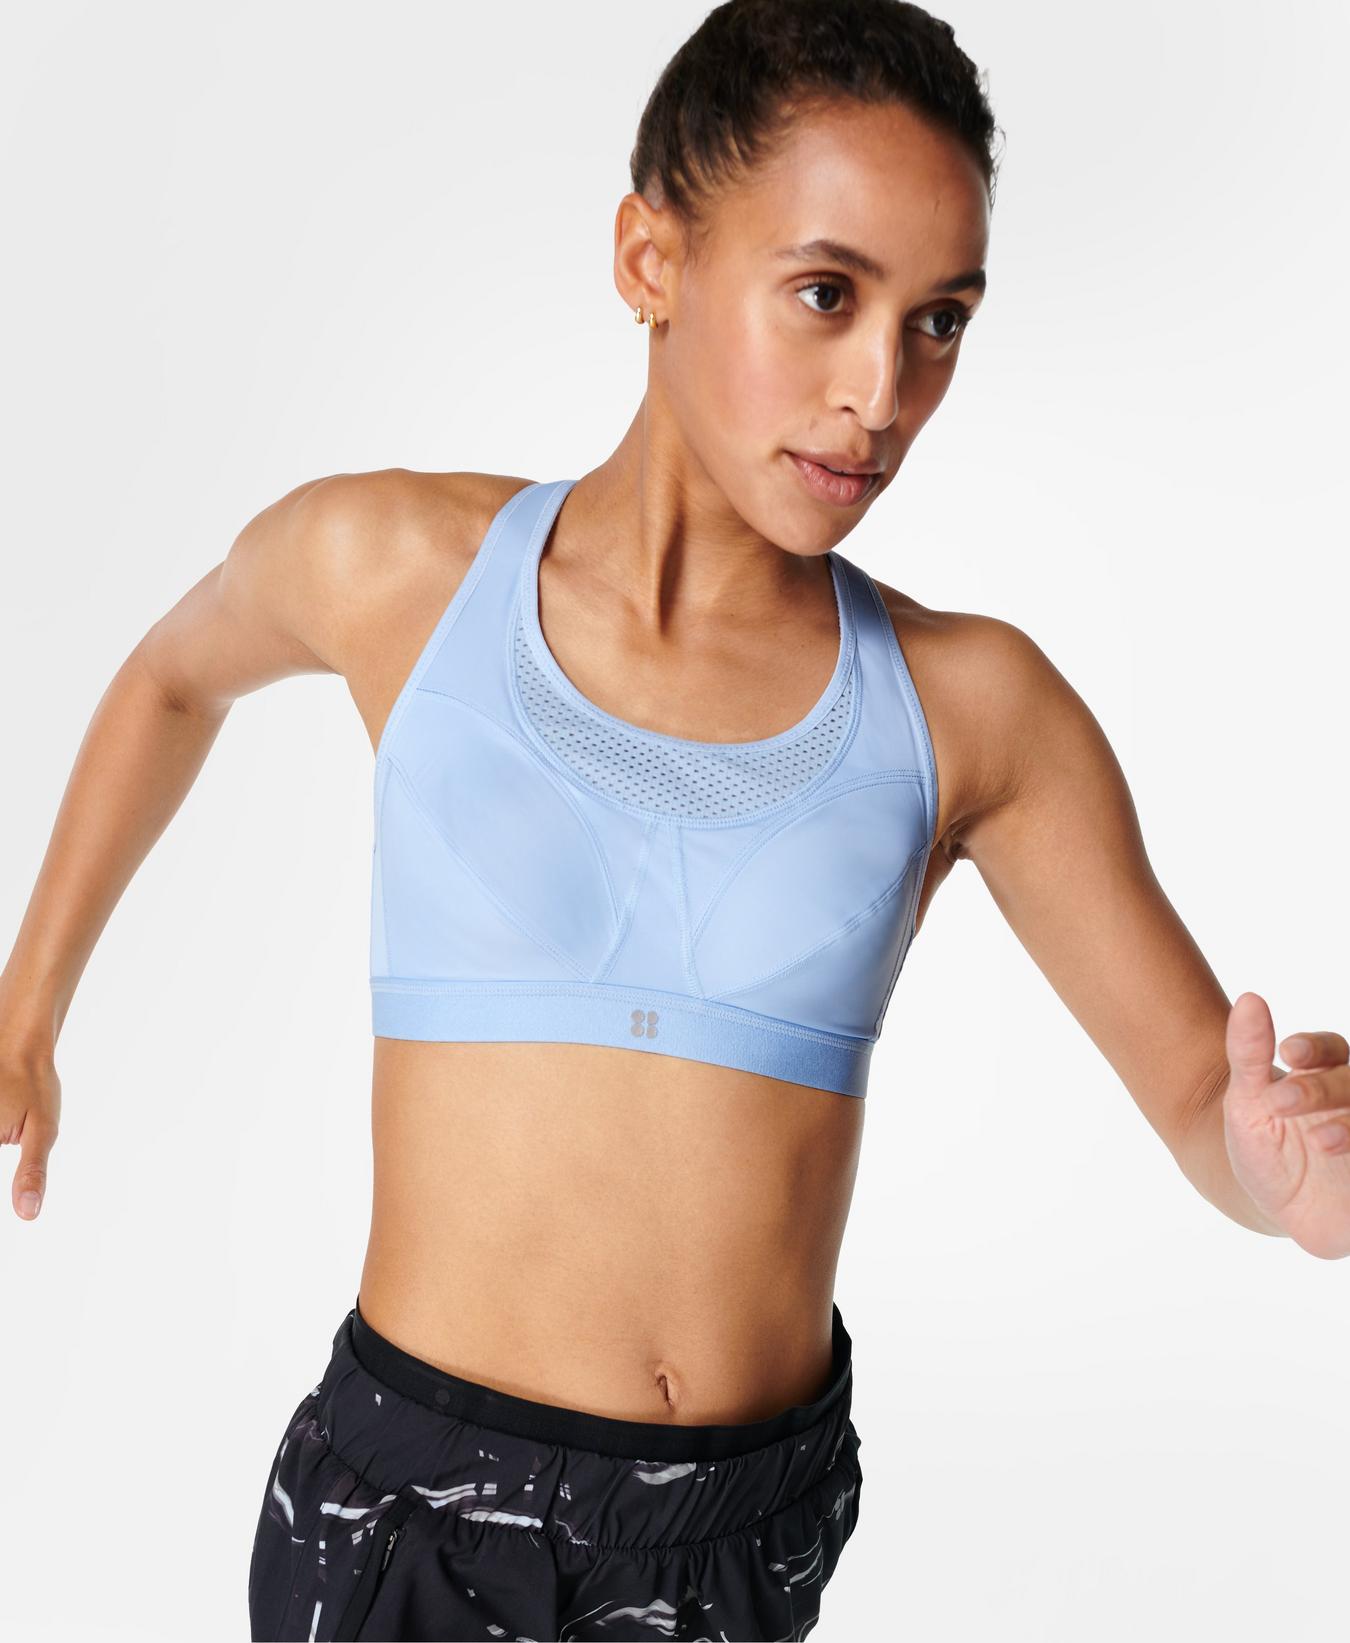 Ultra Running Bra - Filter Blue, Women's Sports Bras